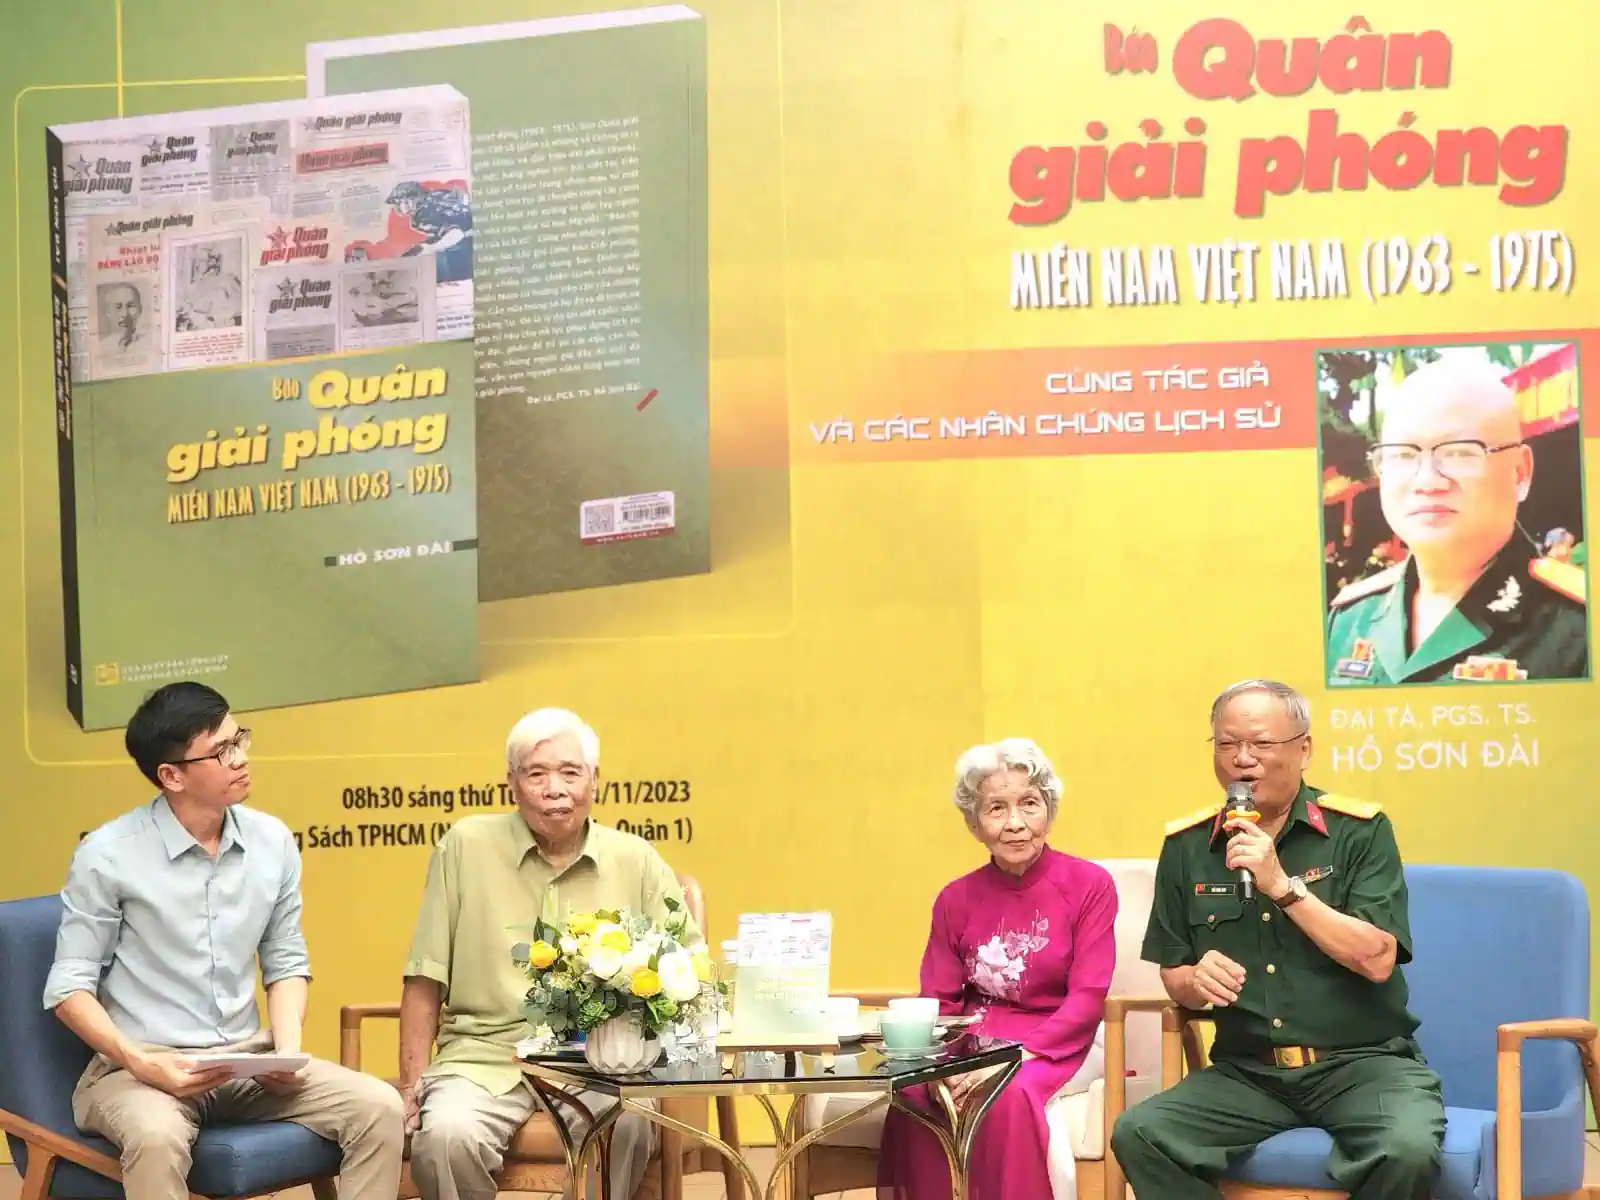 Đại tá, PGS.TS Hồ Sơn Đài (bìa phải) giao lưu trong buổi ra mắt sách tại Đường Sách TP Hồ Chí Minh.